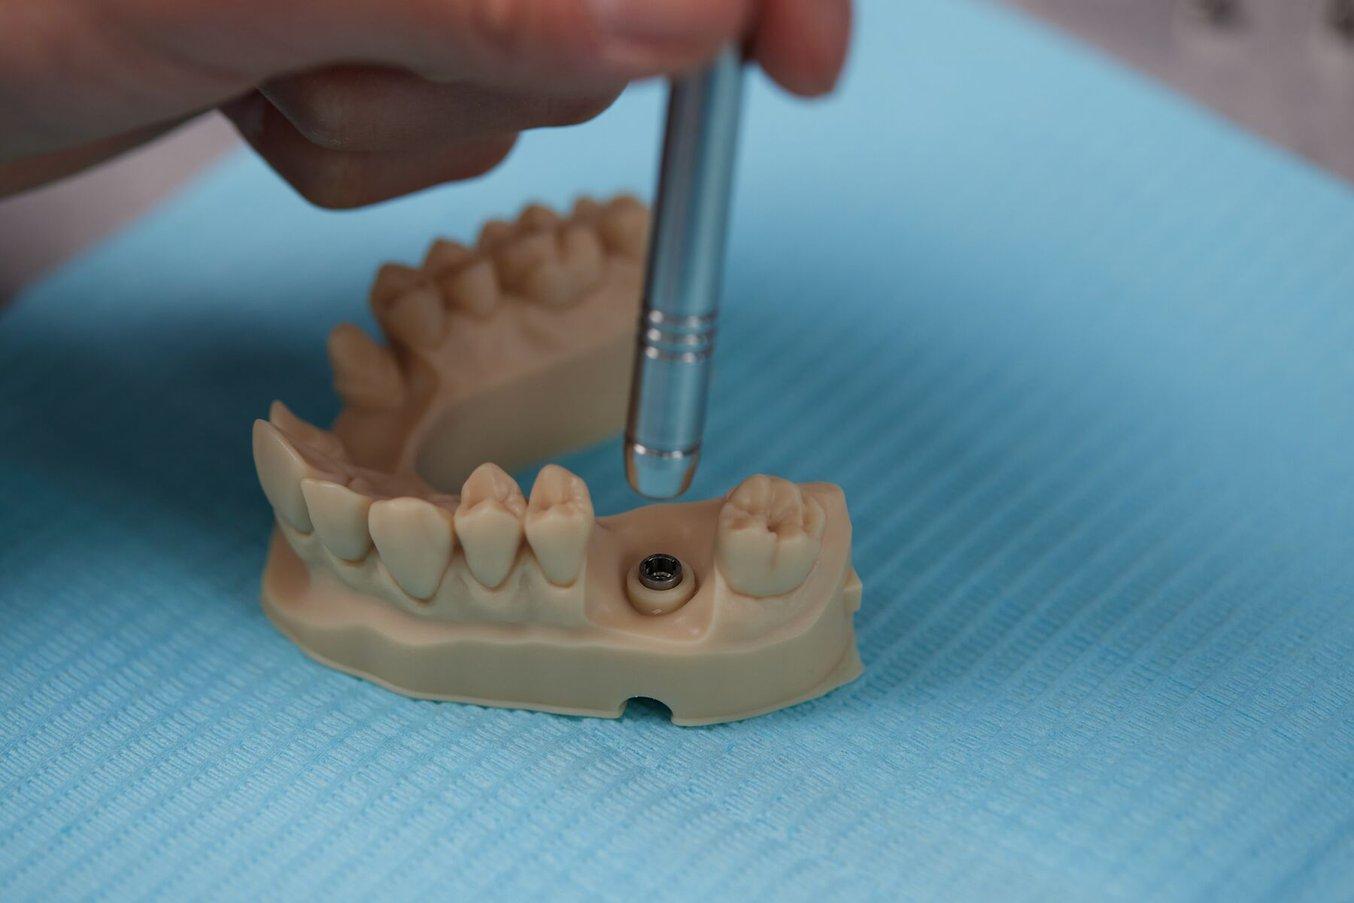 Dental 3D printed parts in Precision Model Resin material